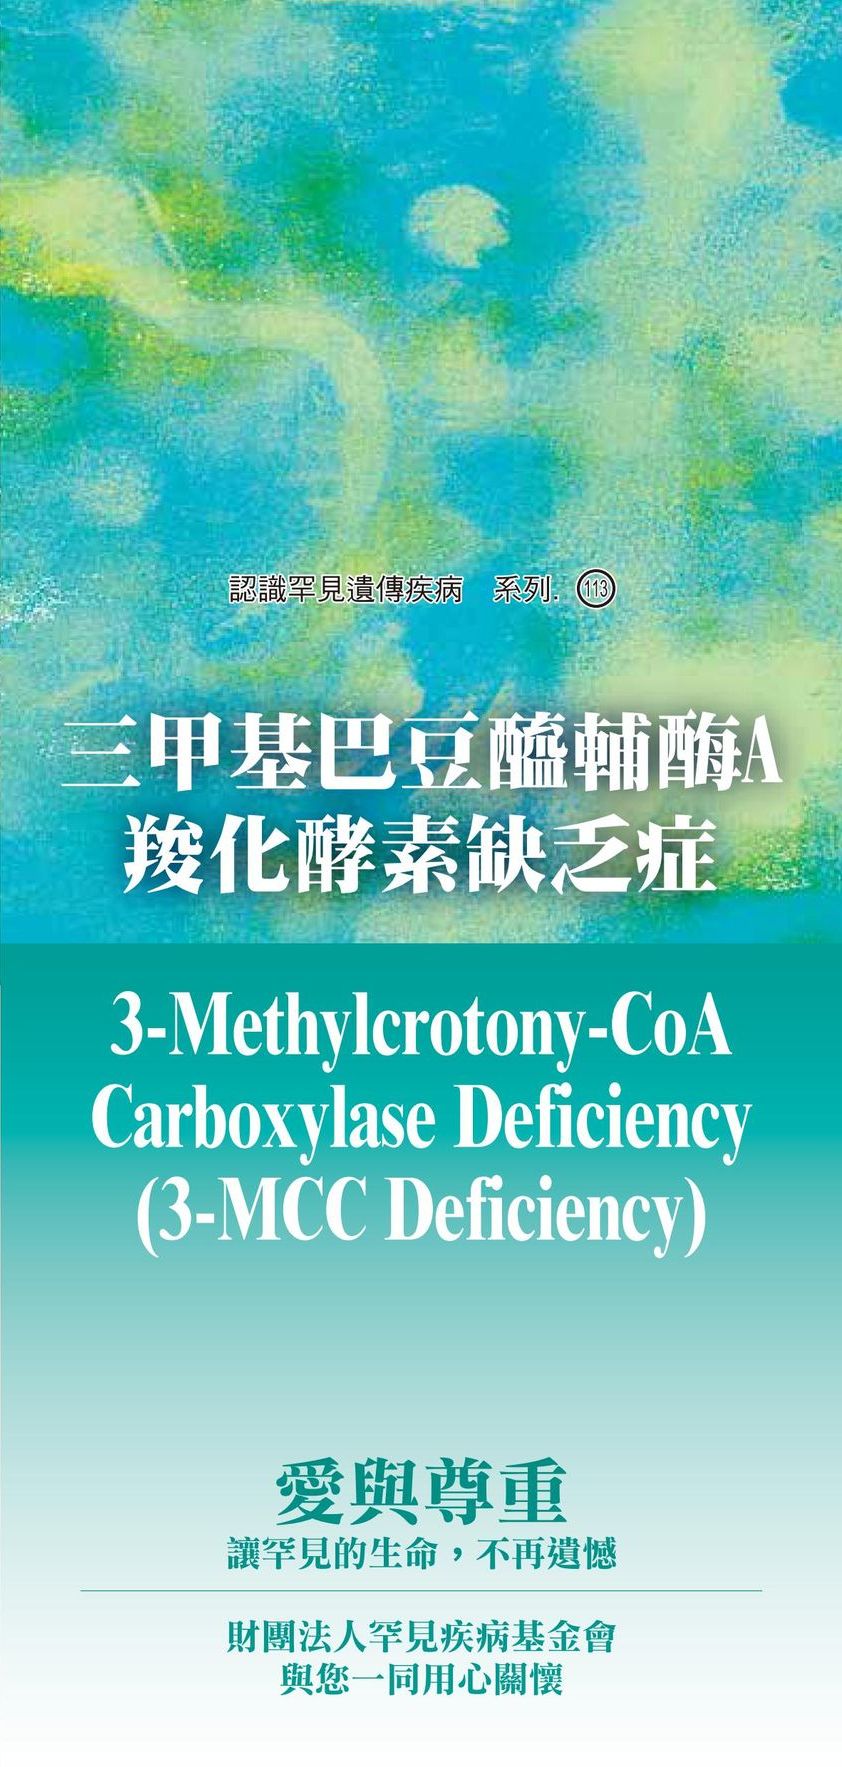 三甲基巴豆醯輔?A羧化酵素缺乏症  ( 3-Methylcrotony-CoA Carboxylase Deficiency, 3-MCC Deficiency )文章照片